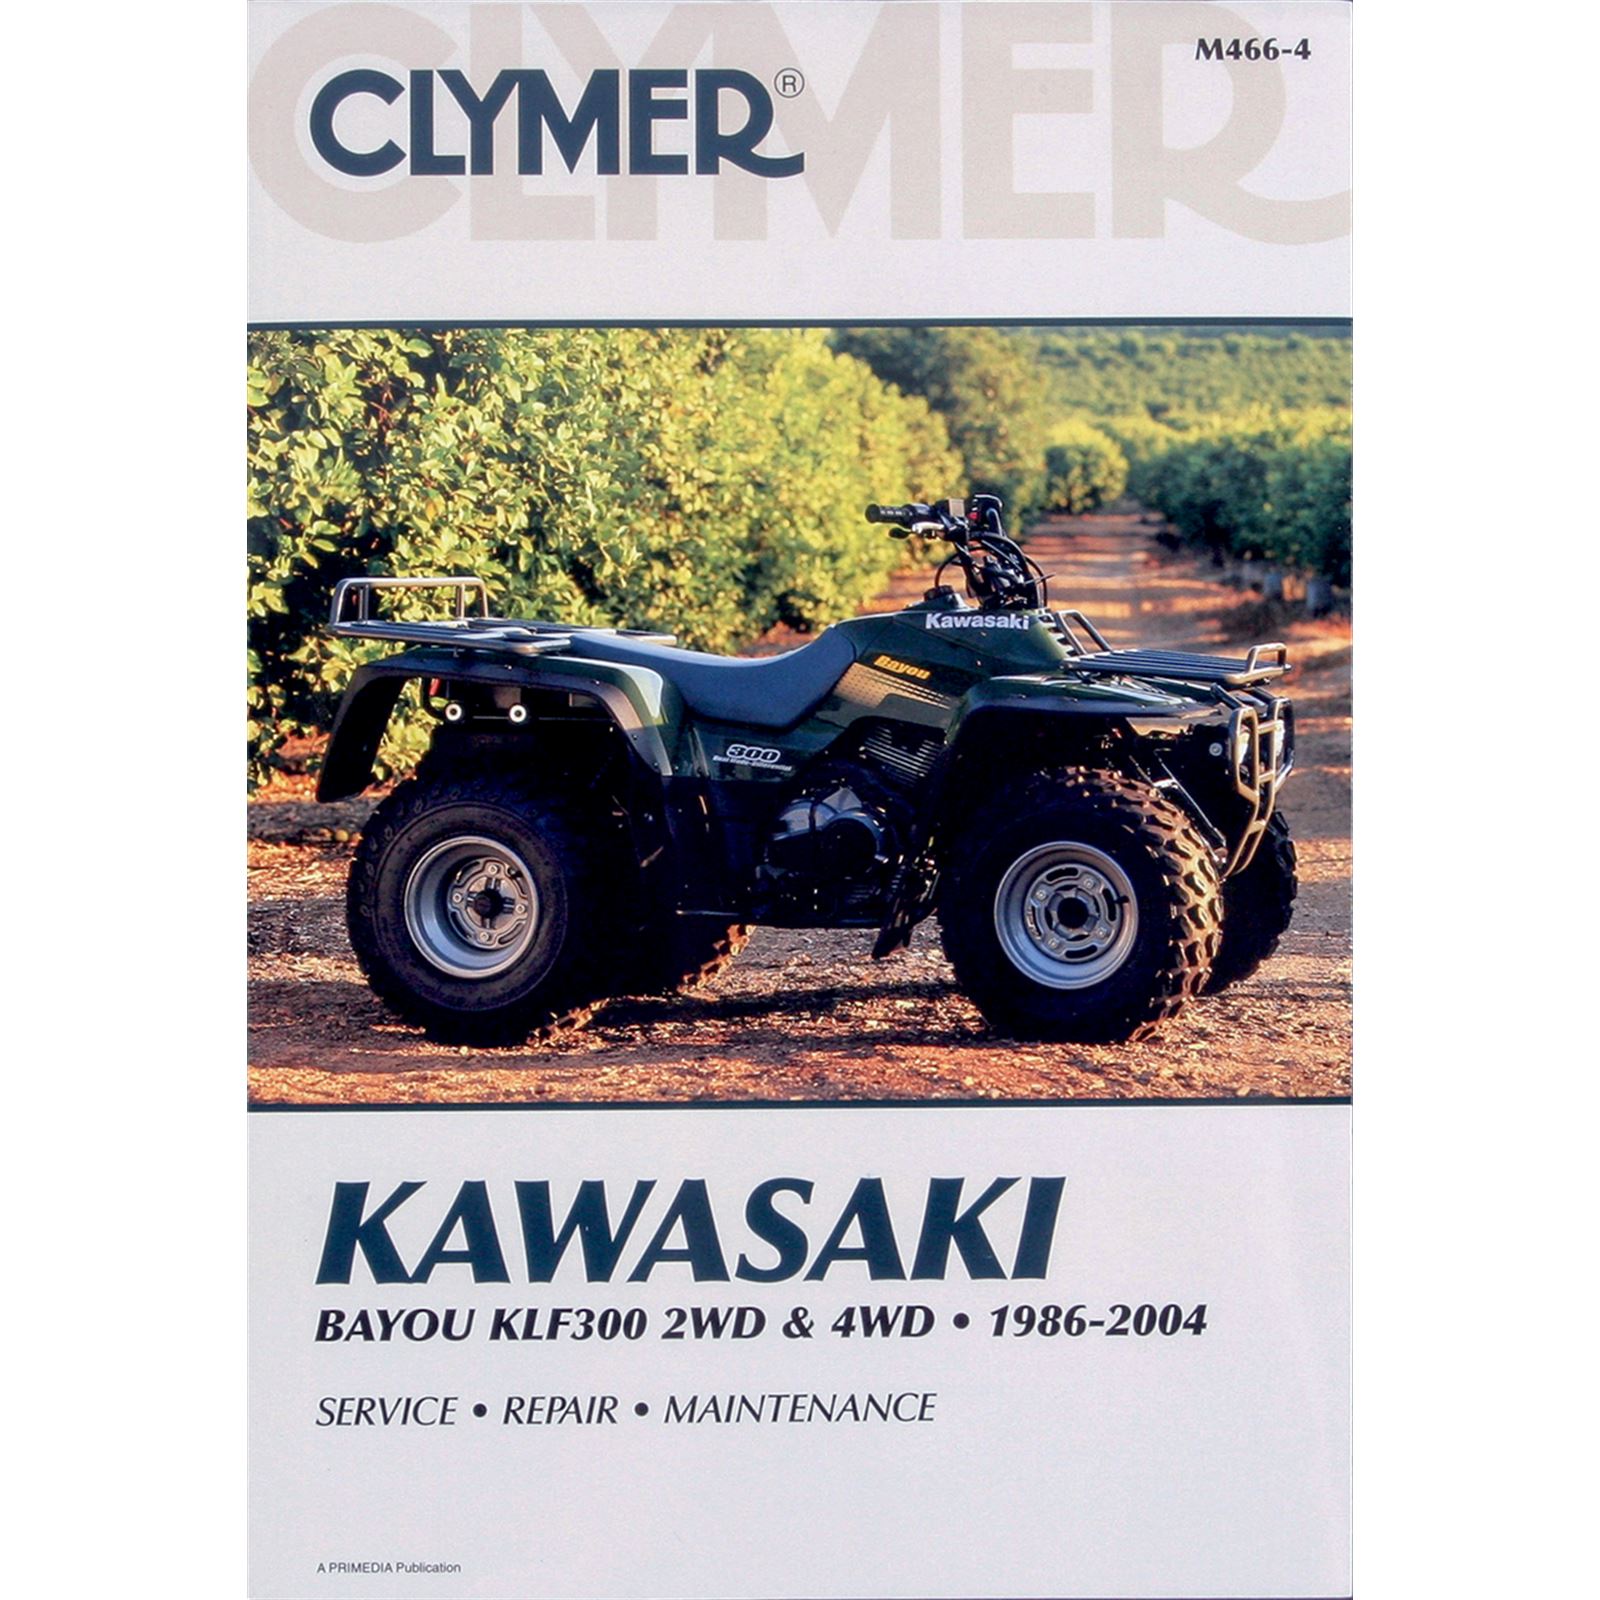 Clymer Manual for Kawasaki KLF300 Bayou